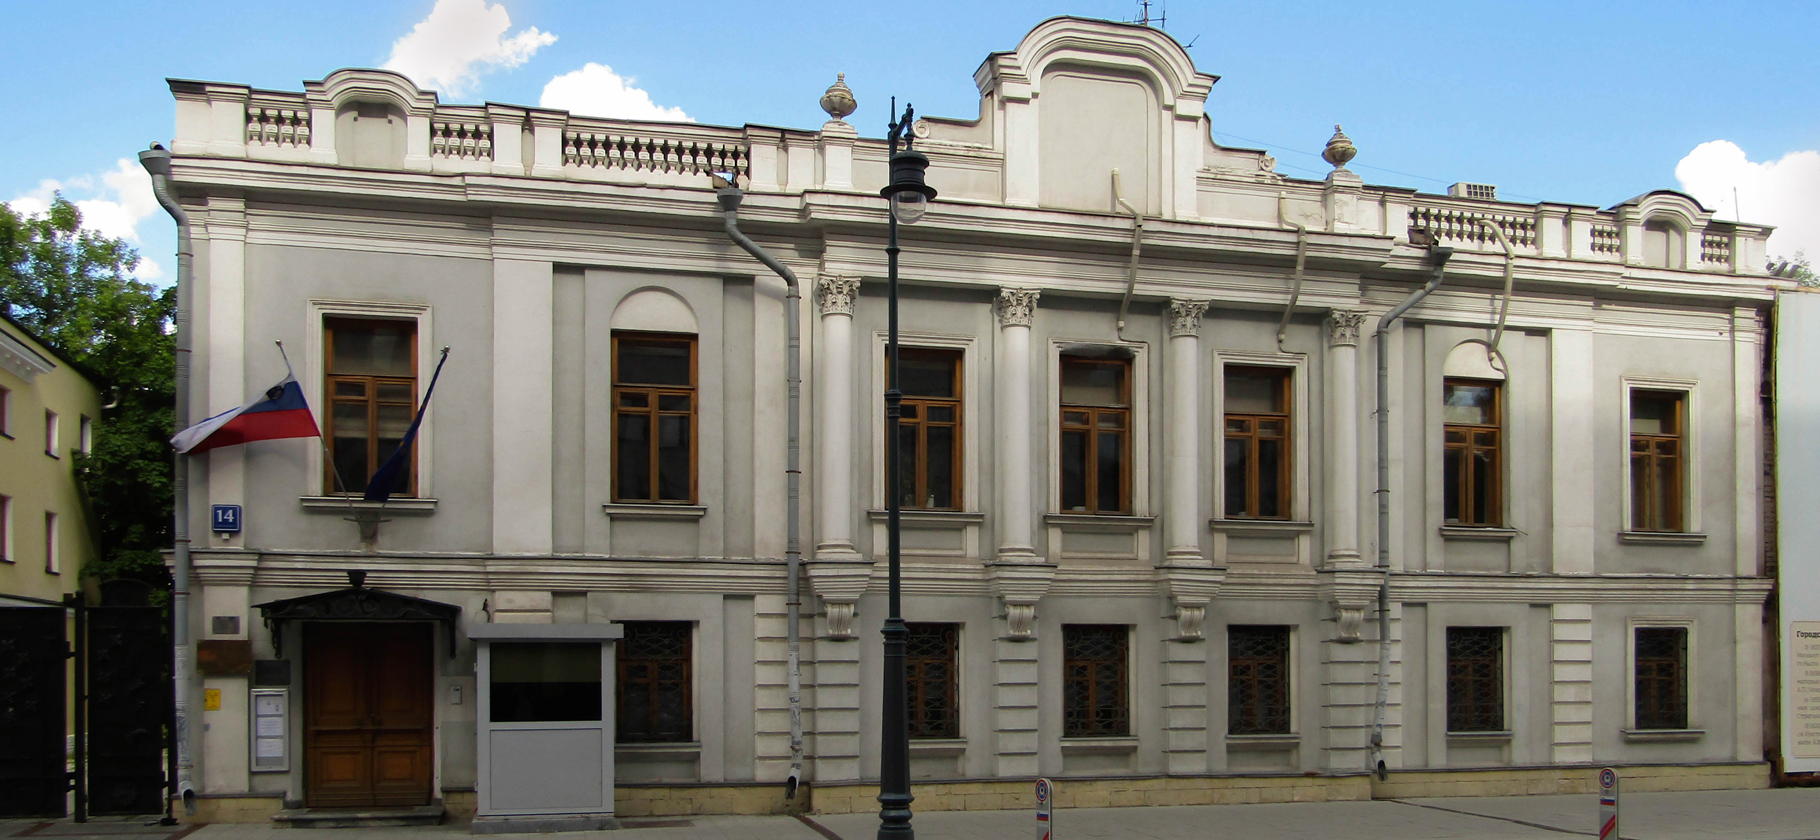 Визовые центры Словении в России приостановят работу с 1 по 31 июля